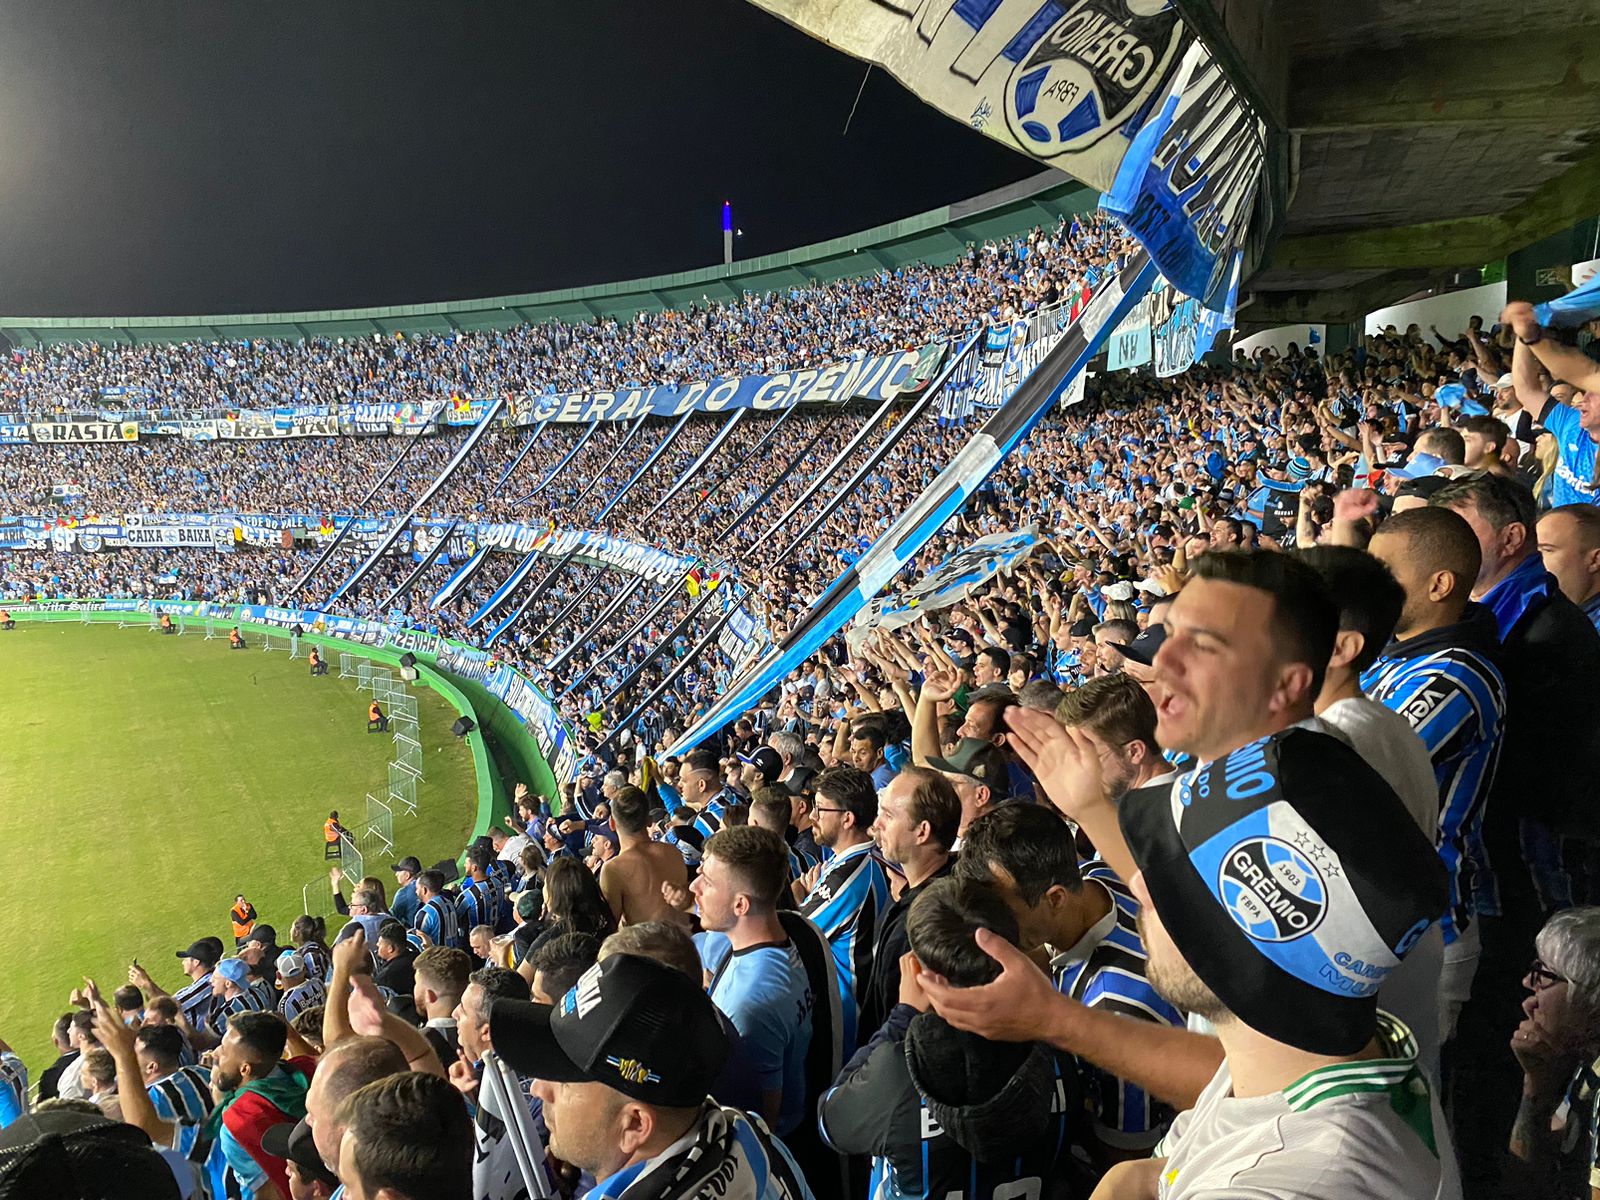 Festa feita pela torcida do Grêmio foi enalteceia pelos jogadores e pela imprensa (Foto: Felipe Eduardo Zamboni)